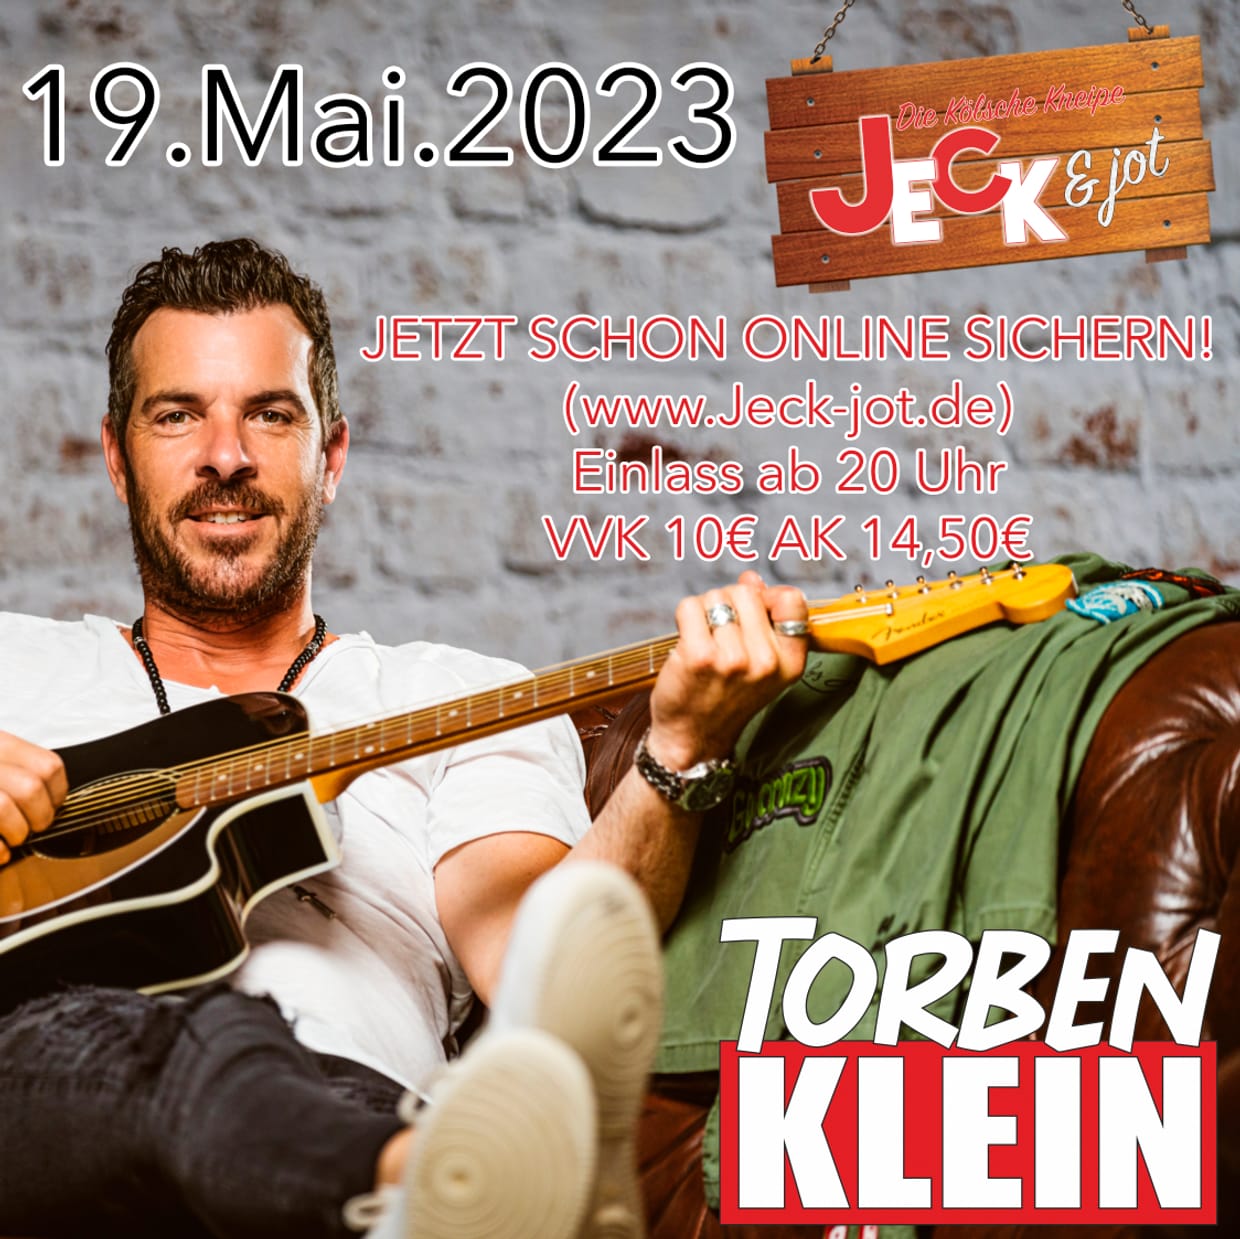 Torben Klein im Jeck & jot 2023